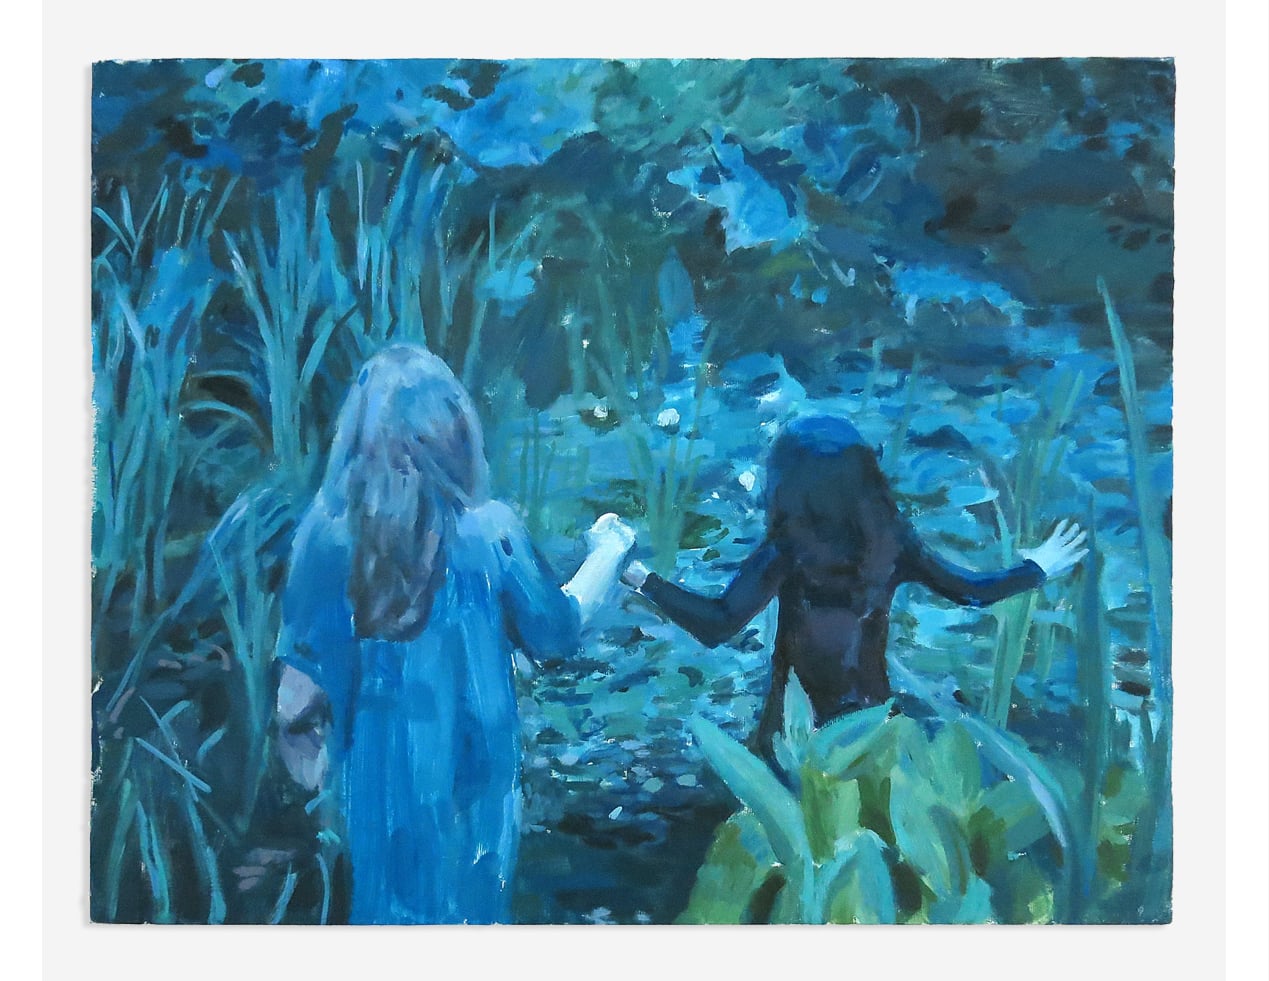   La Nuit Des Étoiles Filantes (A Virgin Among the Living Dead) 1973,  oil on canvas, 16" x 20", 2015   